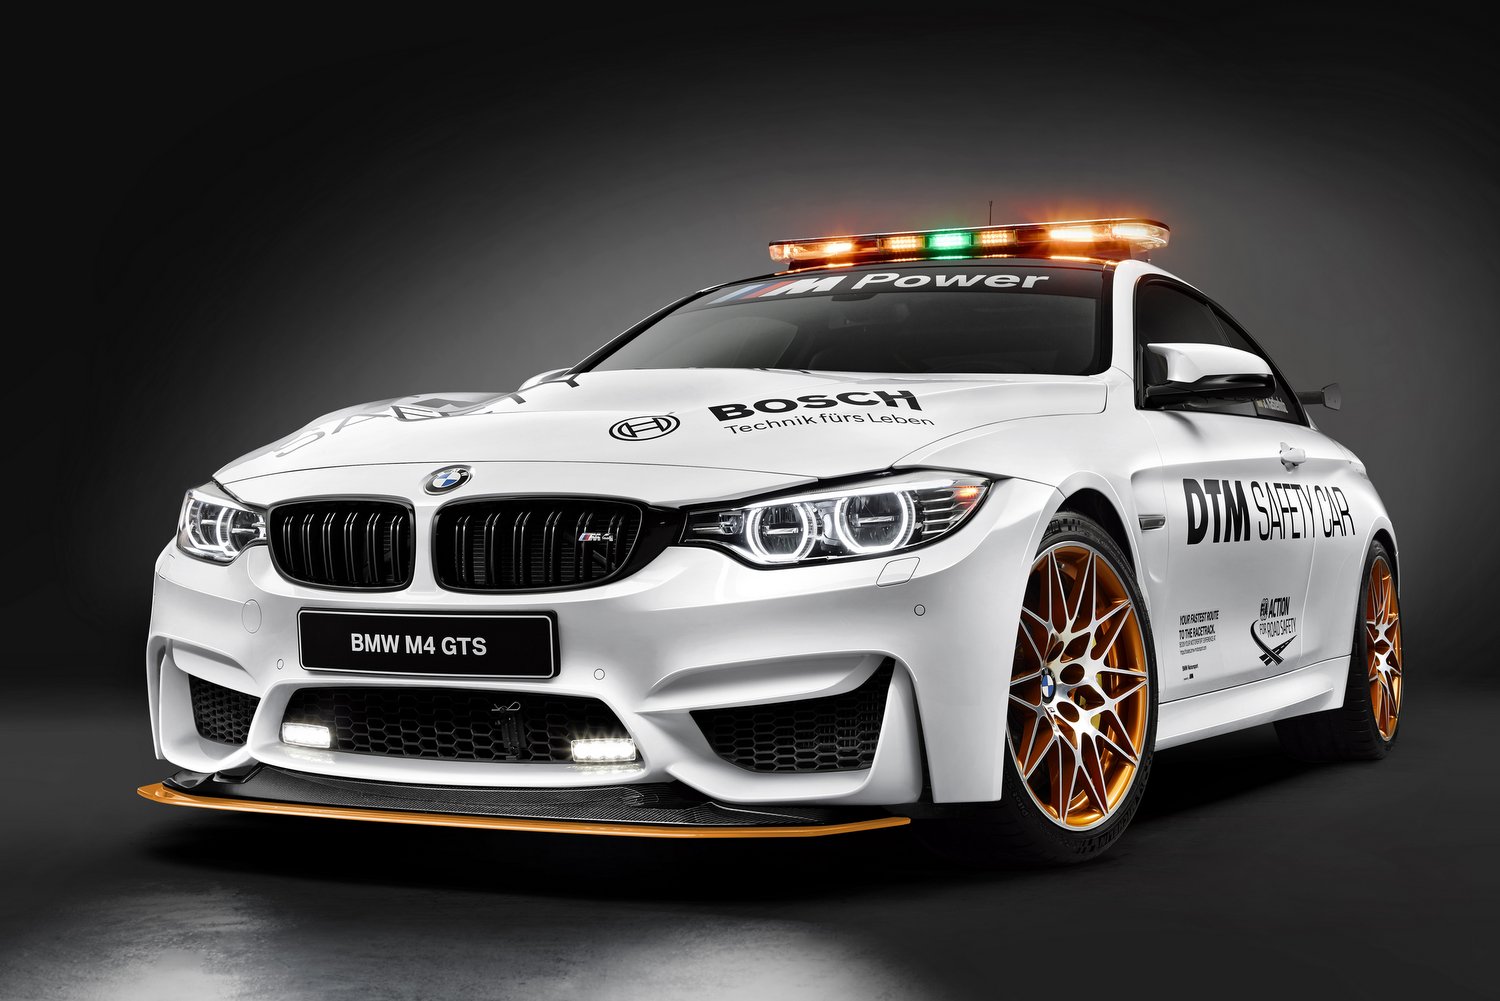 A legsportosabb BMW vigyáz a DTM biztonságára 10